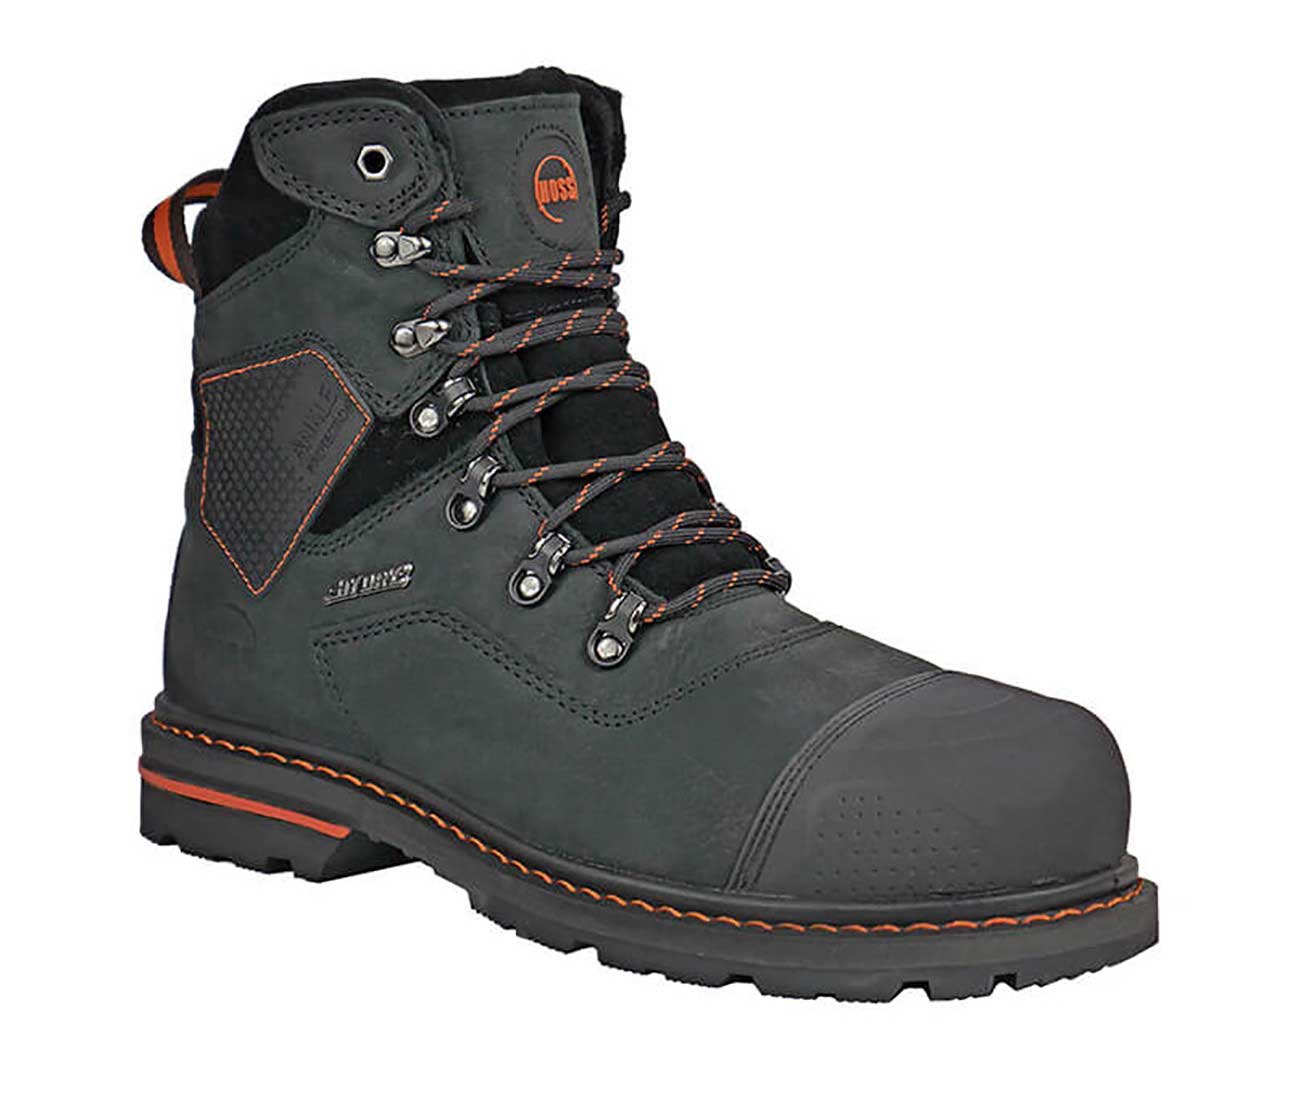 Hoss Boots 60108 Range Men's 6 Waterproof Composite Toe Work Boot - Extra Depth